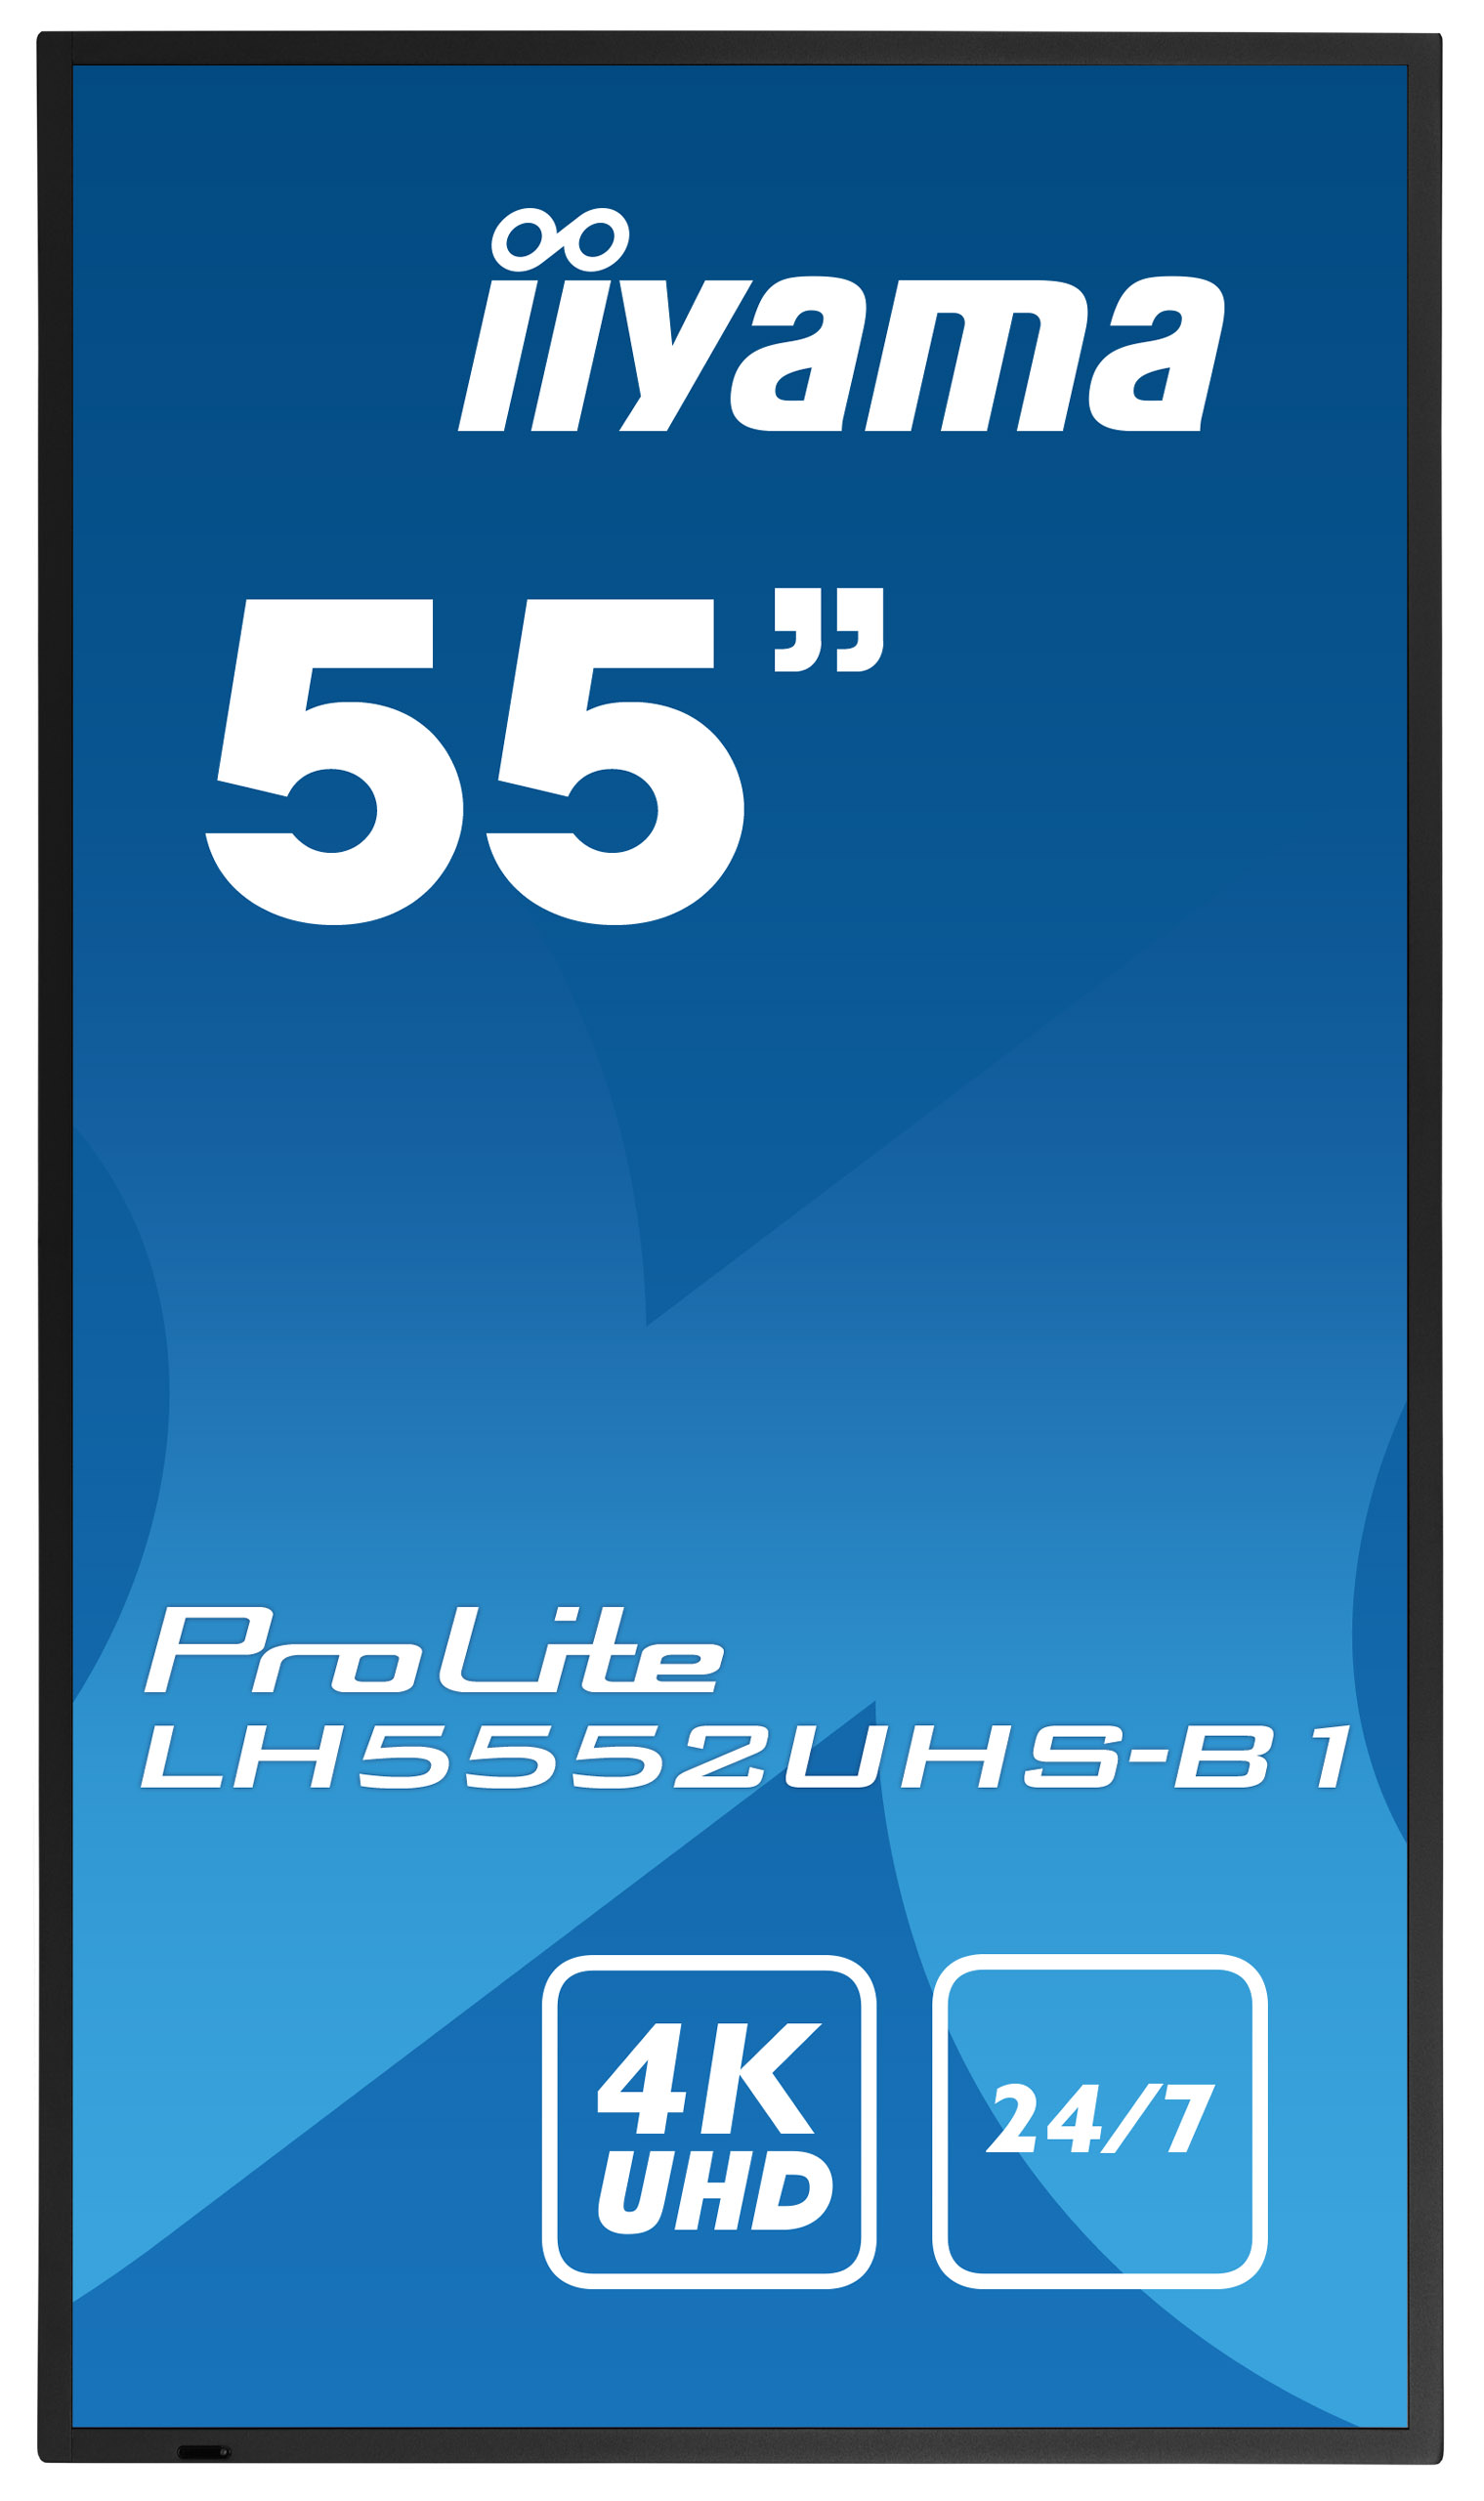 Iiyama ProLite LH5552UHS-B1 | 54,6" (138,8cm) | 24/7 Betriebszeit | 4K UHD-Auflösung